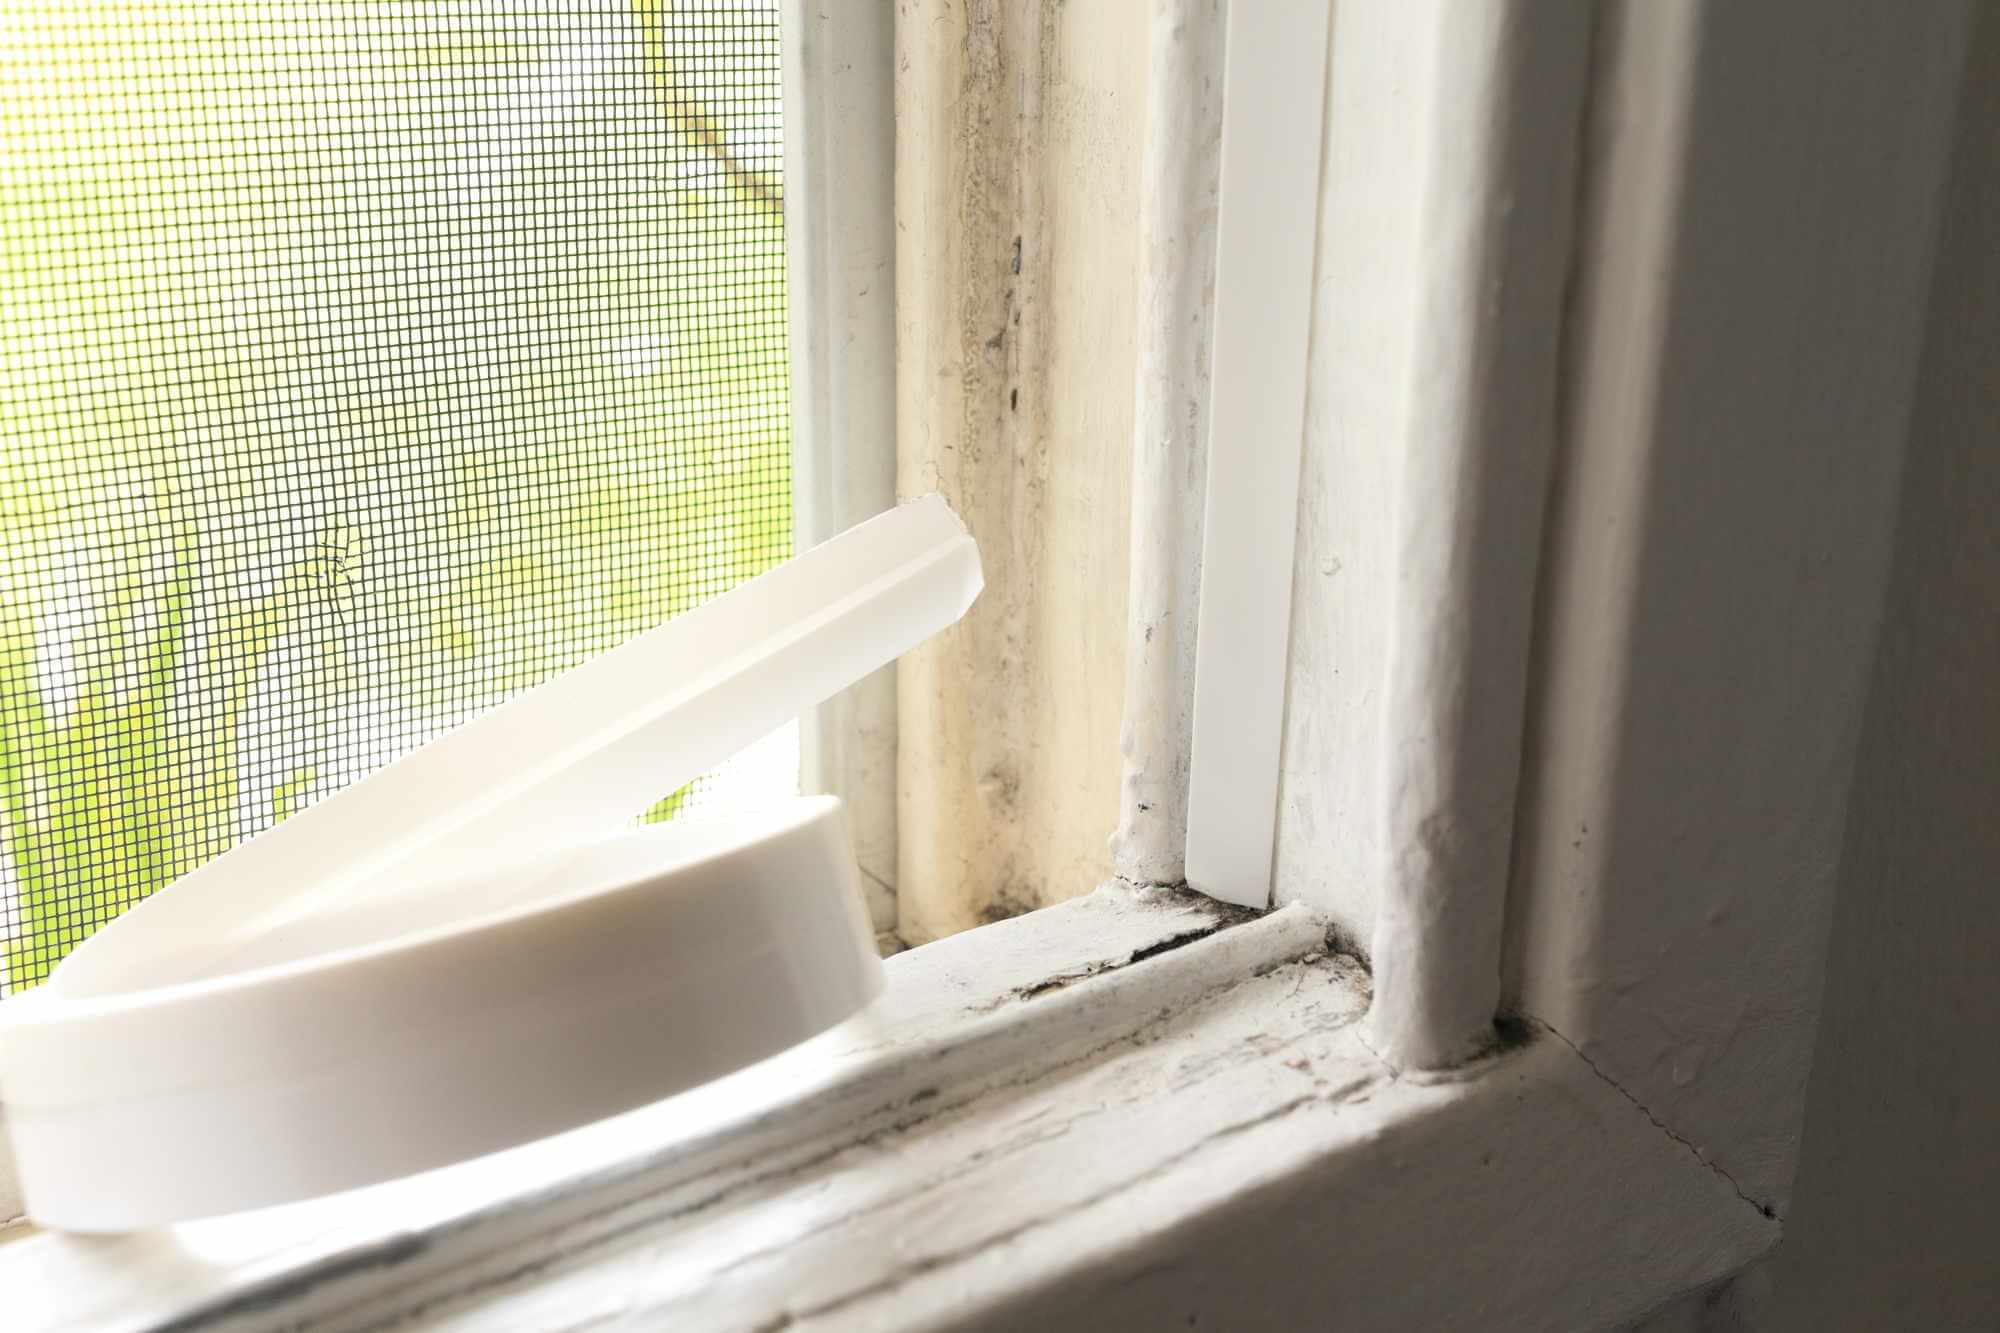 Spray Foam vs. Foam Strips Window Insulation: Which is Better?